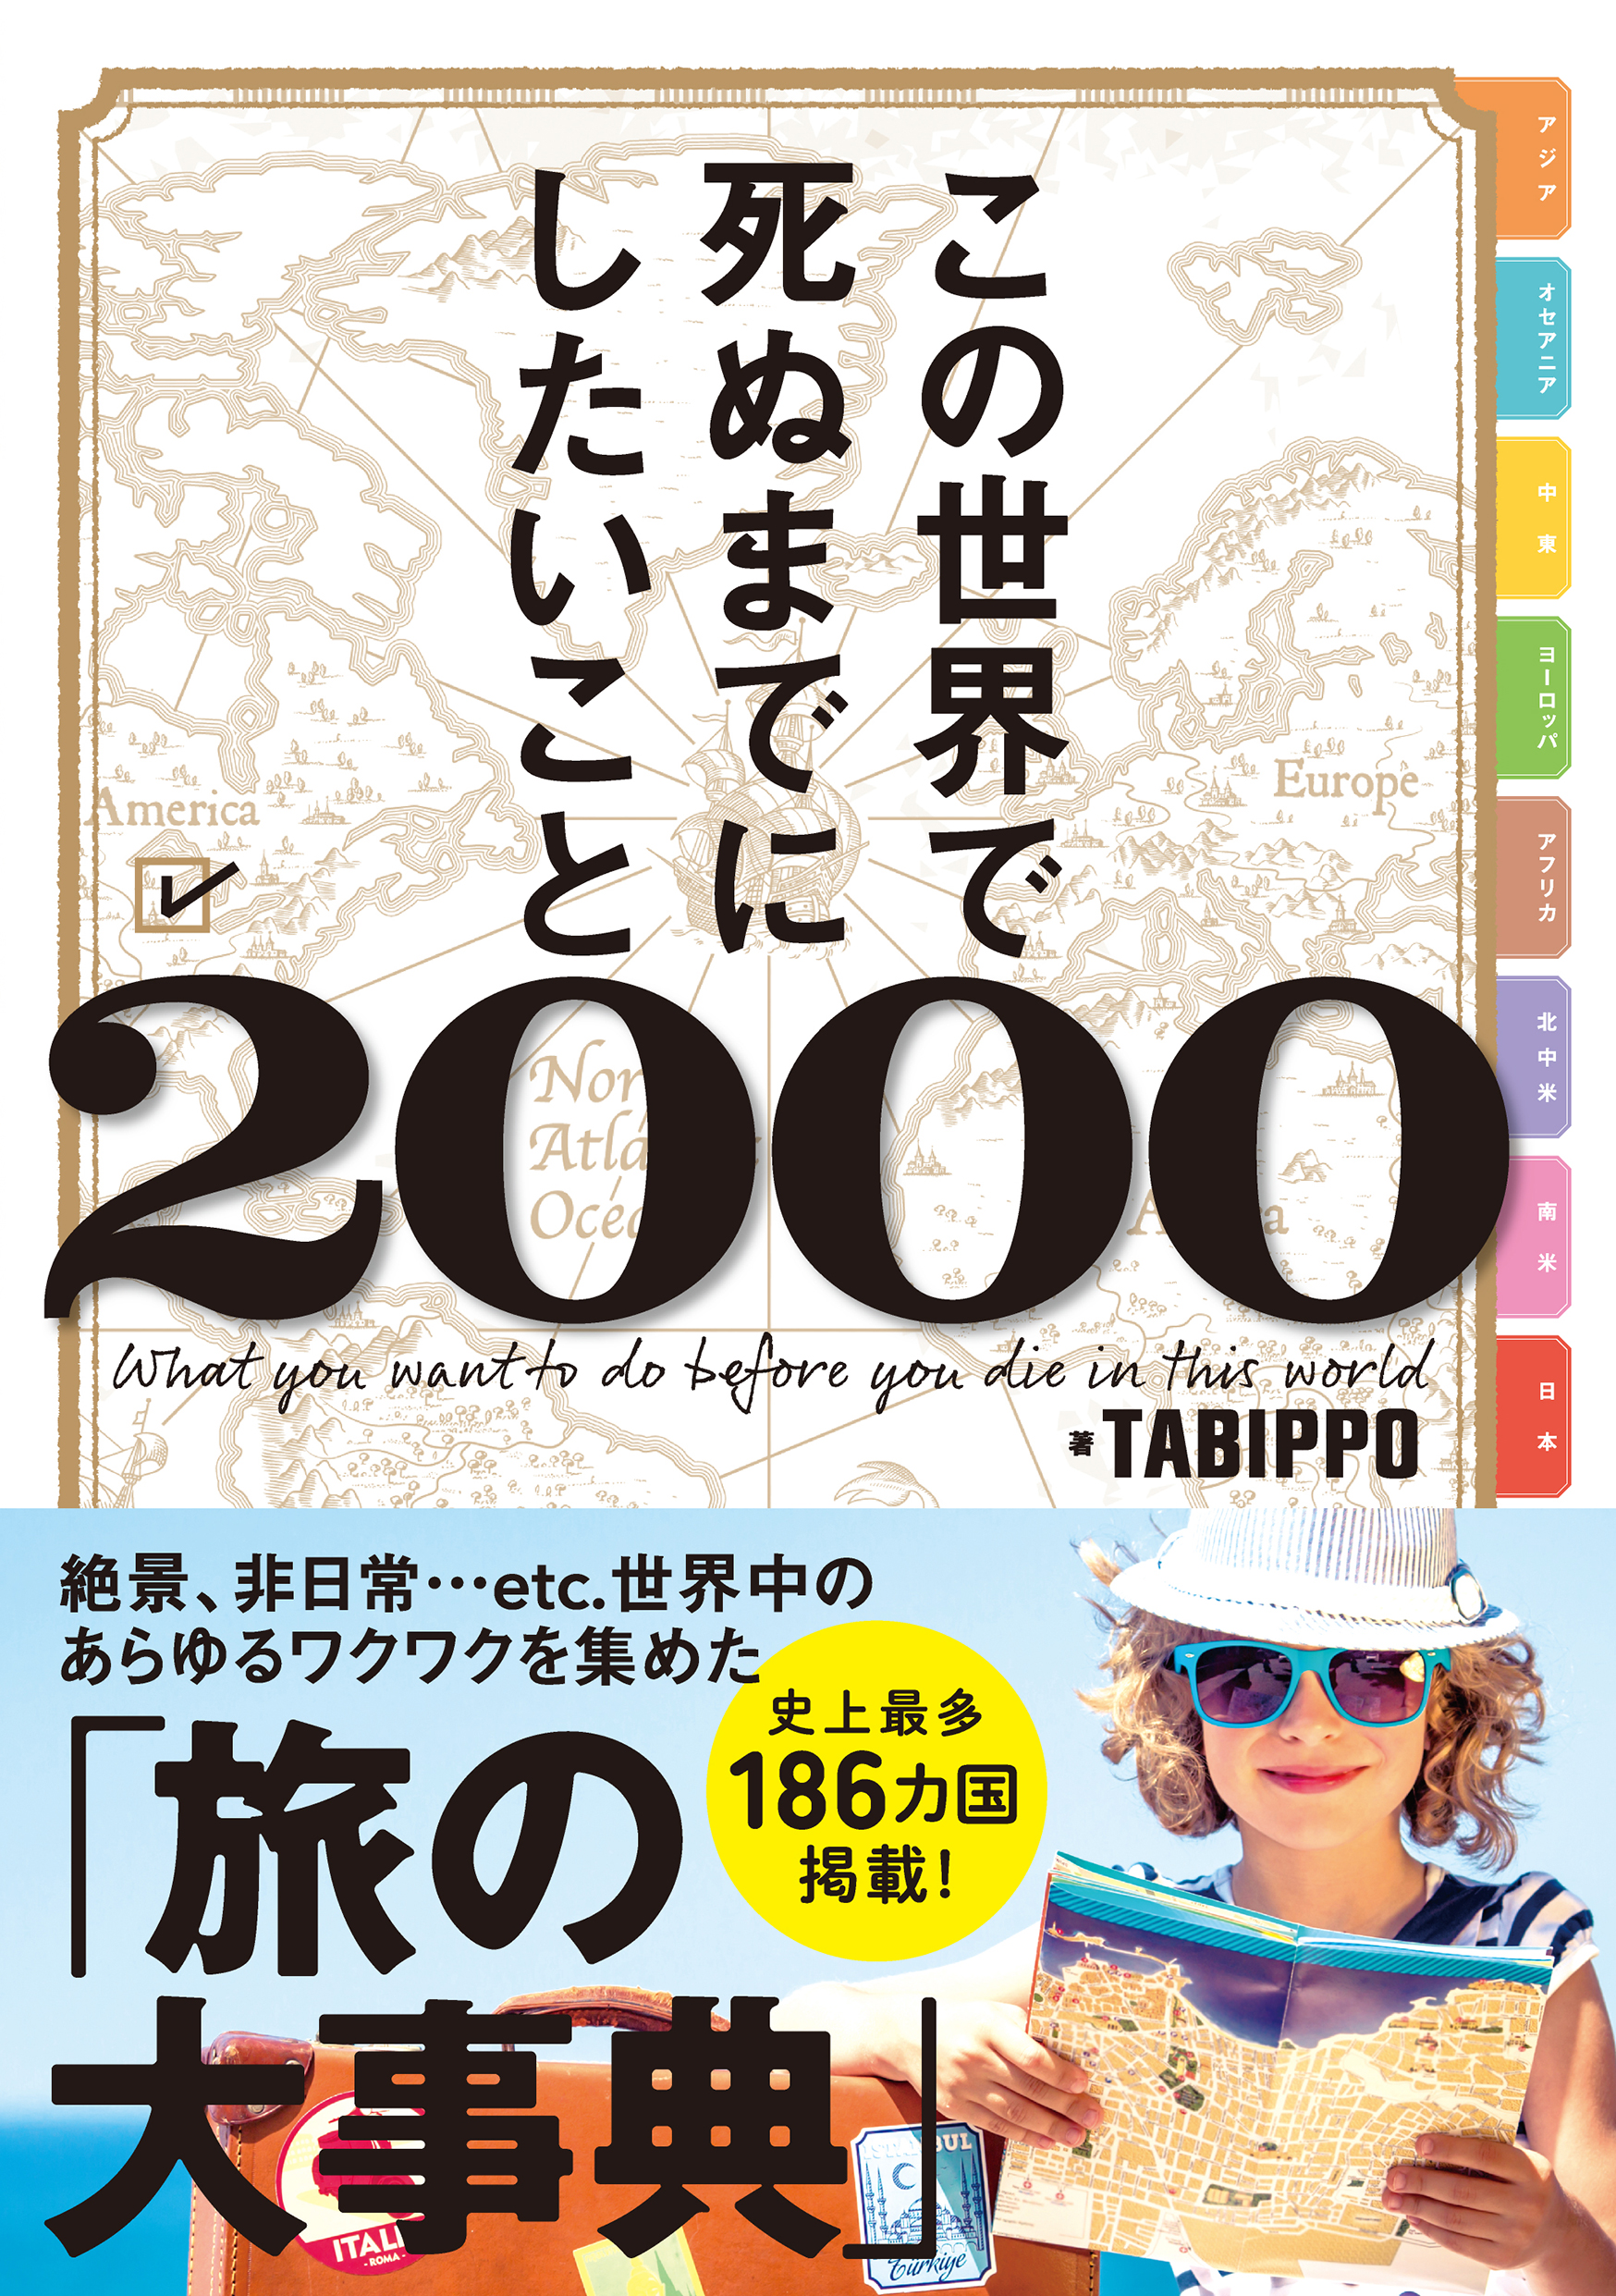 めくってもめくっても終わらない 旅の大事典 が出版 世界186ヵ国 日本一の情報量のガイドブック この世界で死ぬまでにしたいこと00 の執念が異常すぎた ライツ社のプレスリリース